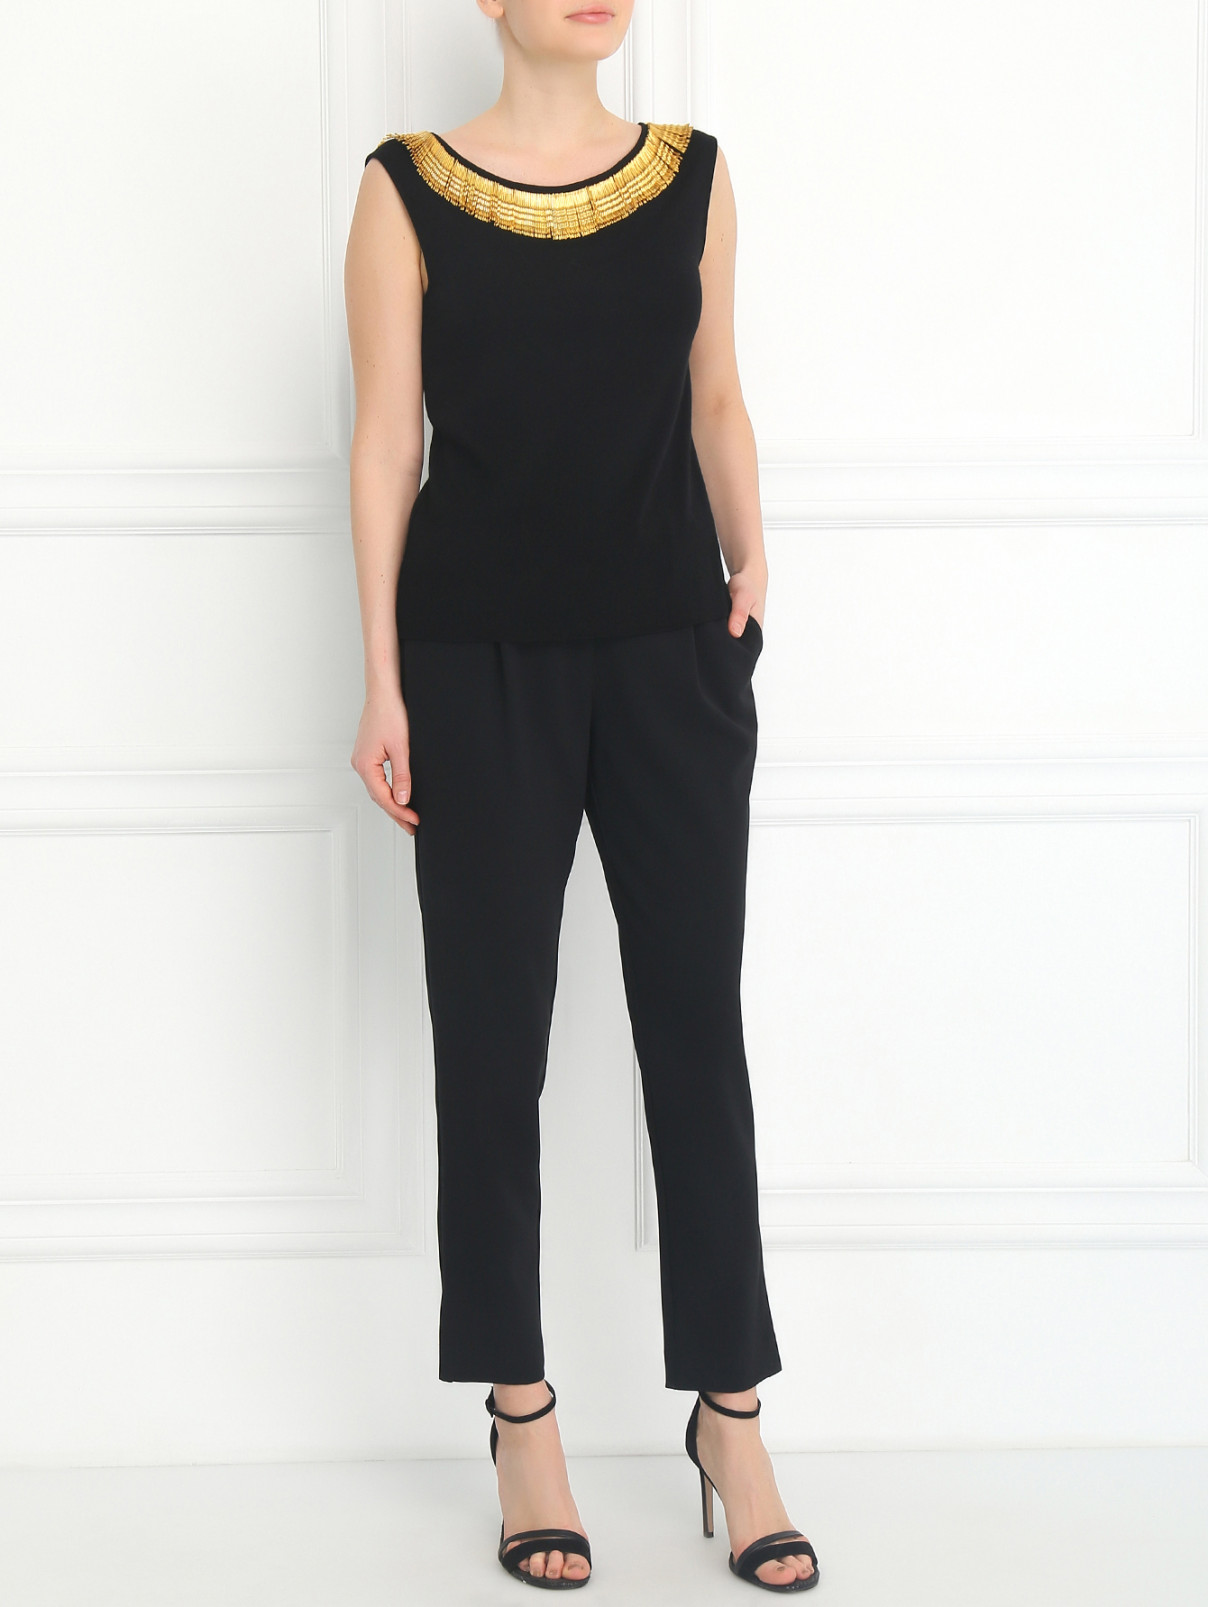 Трикотажный топ с декоративным ожерельем Moschino  –  Модель Общий вид  – Цвет:  Черный